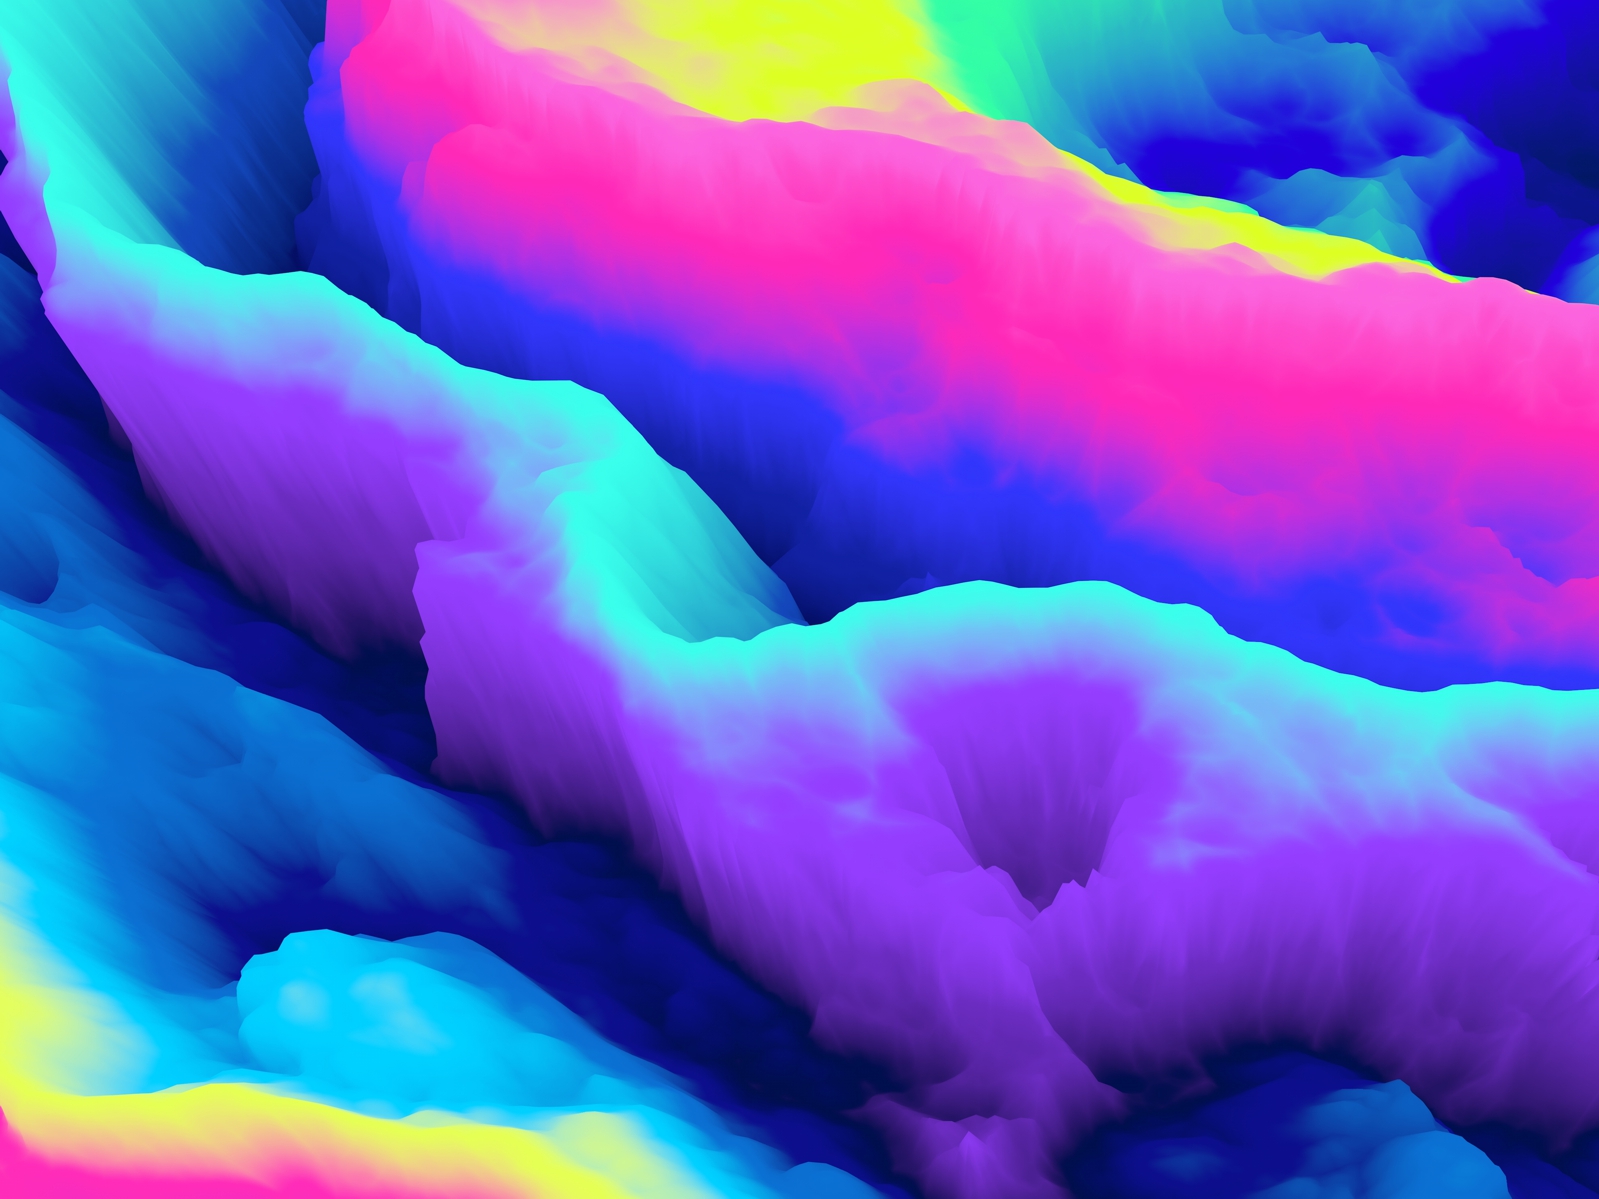 Vlies Tapete Fototapete 3D Muster Wolken Nebel bunt Farben